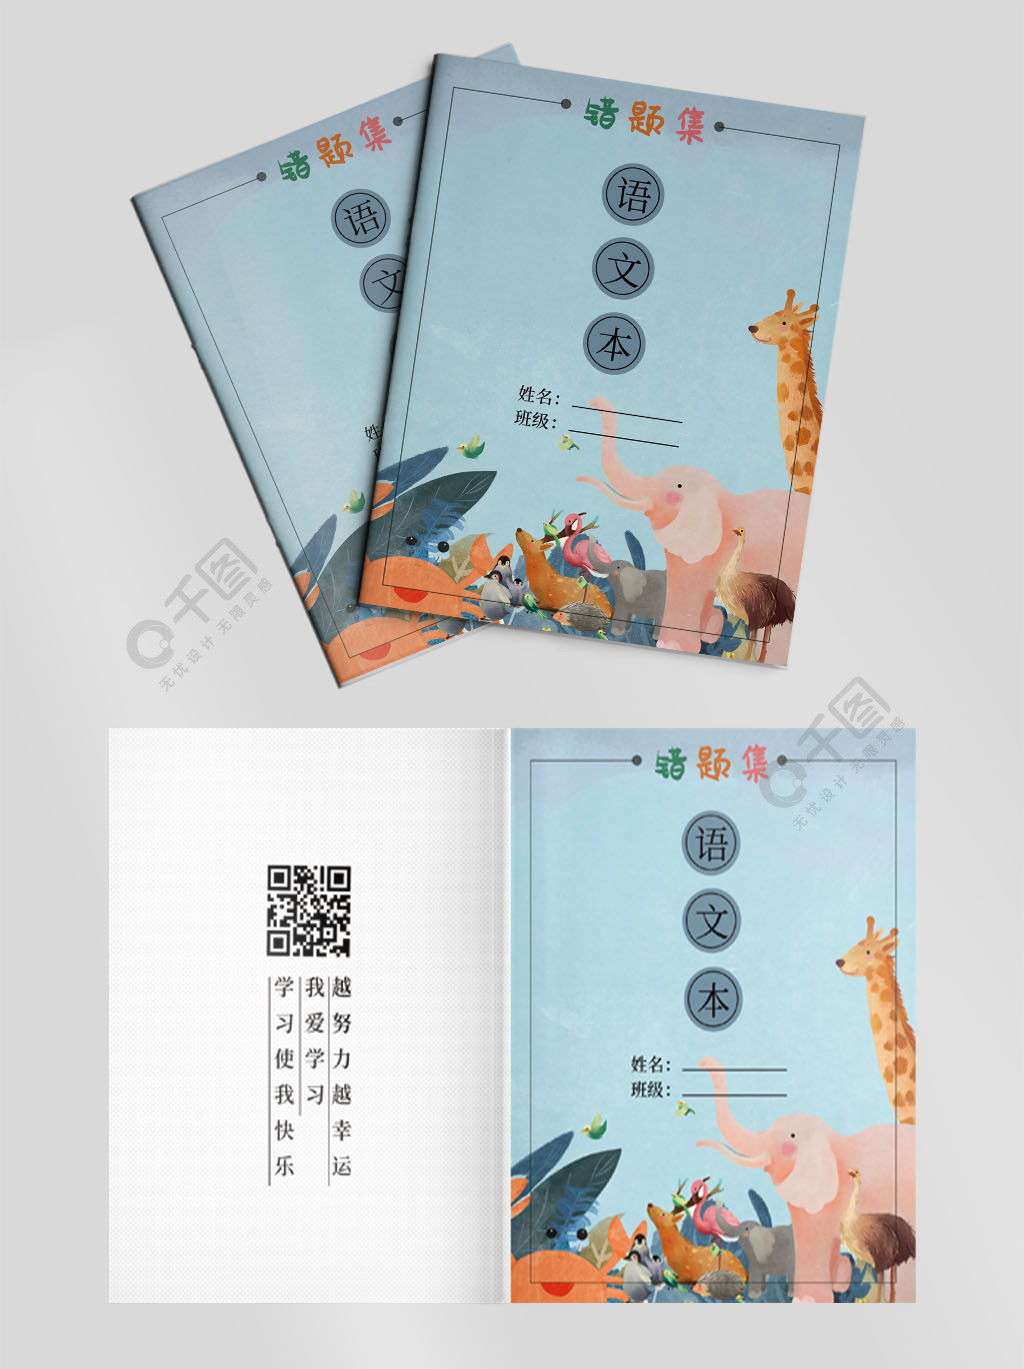 小学笔记本语文封面设计2年前发布